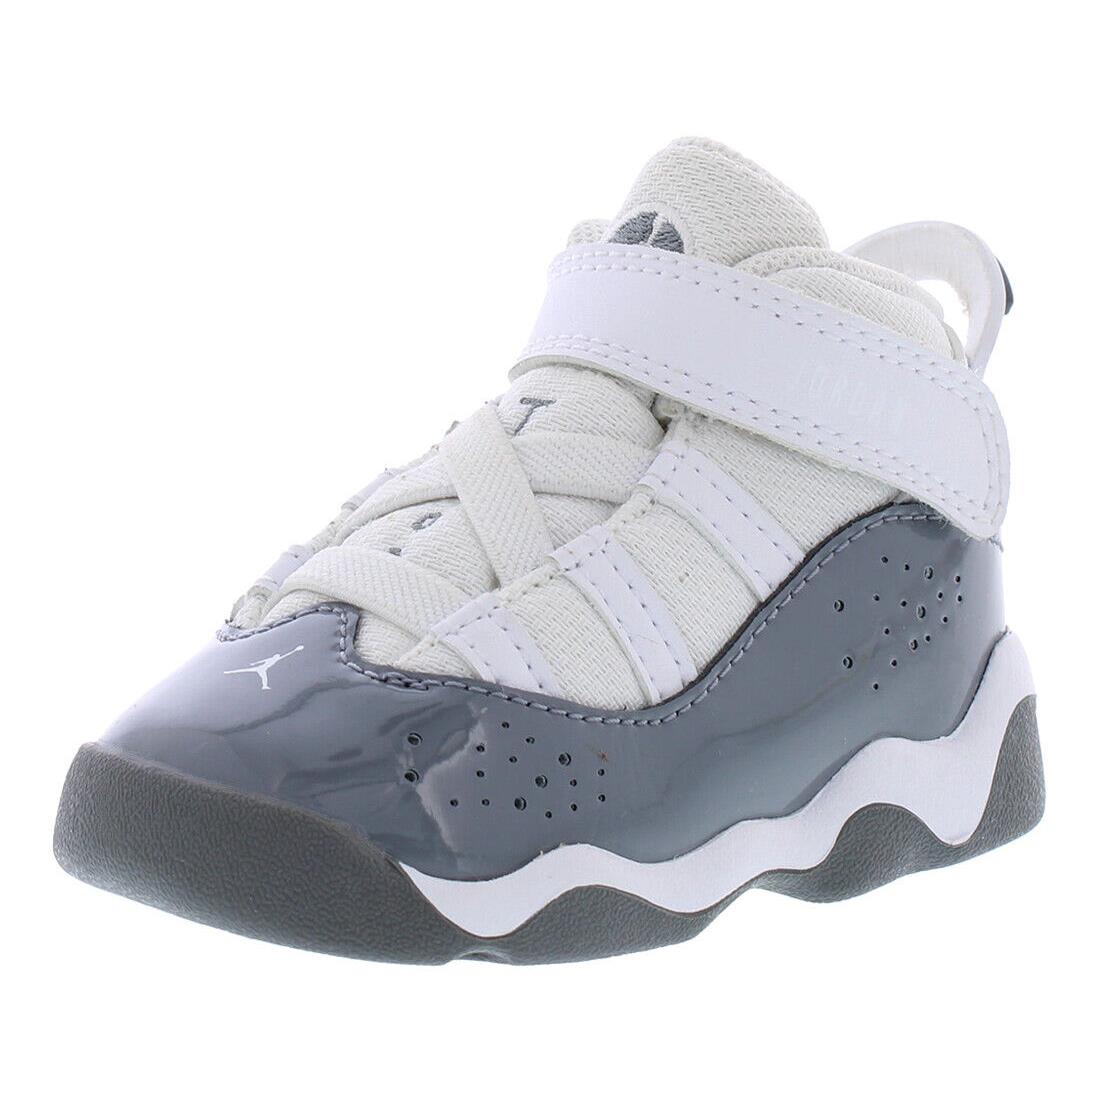 Nike Jordan 6 Rings Infant/toddler Shoes - White/Cool Grey/White, Main: White